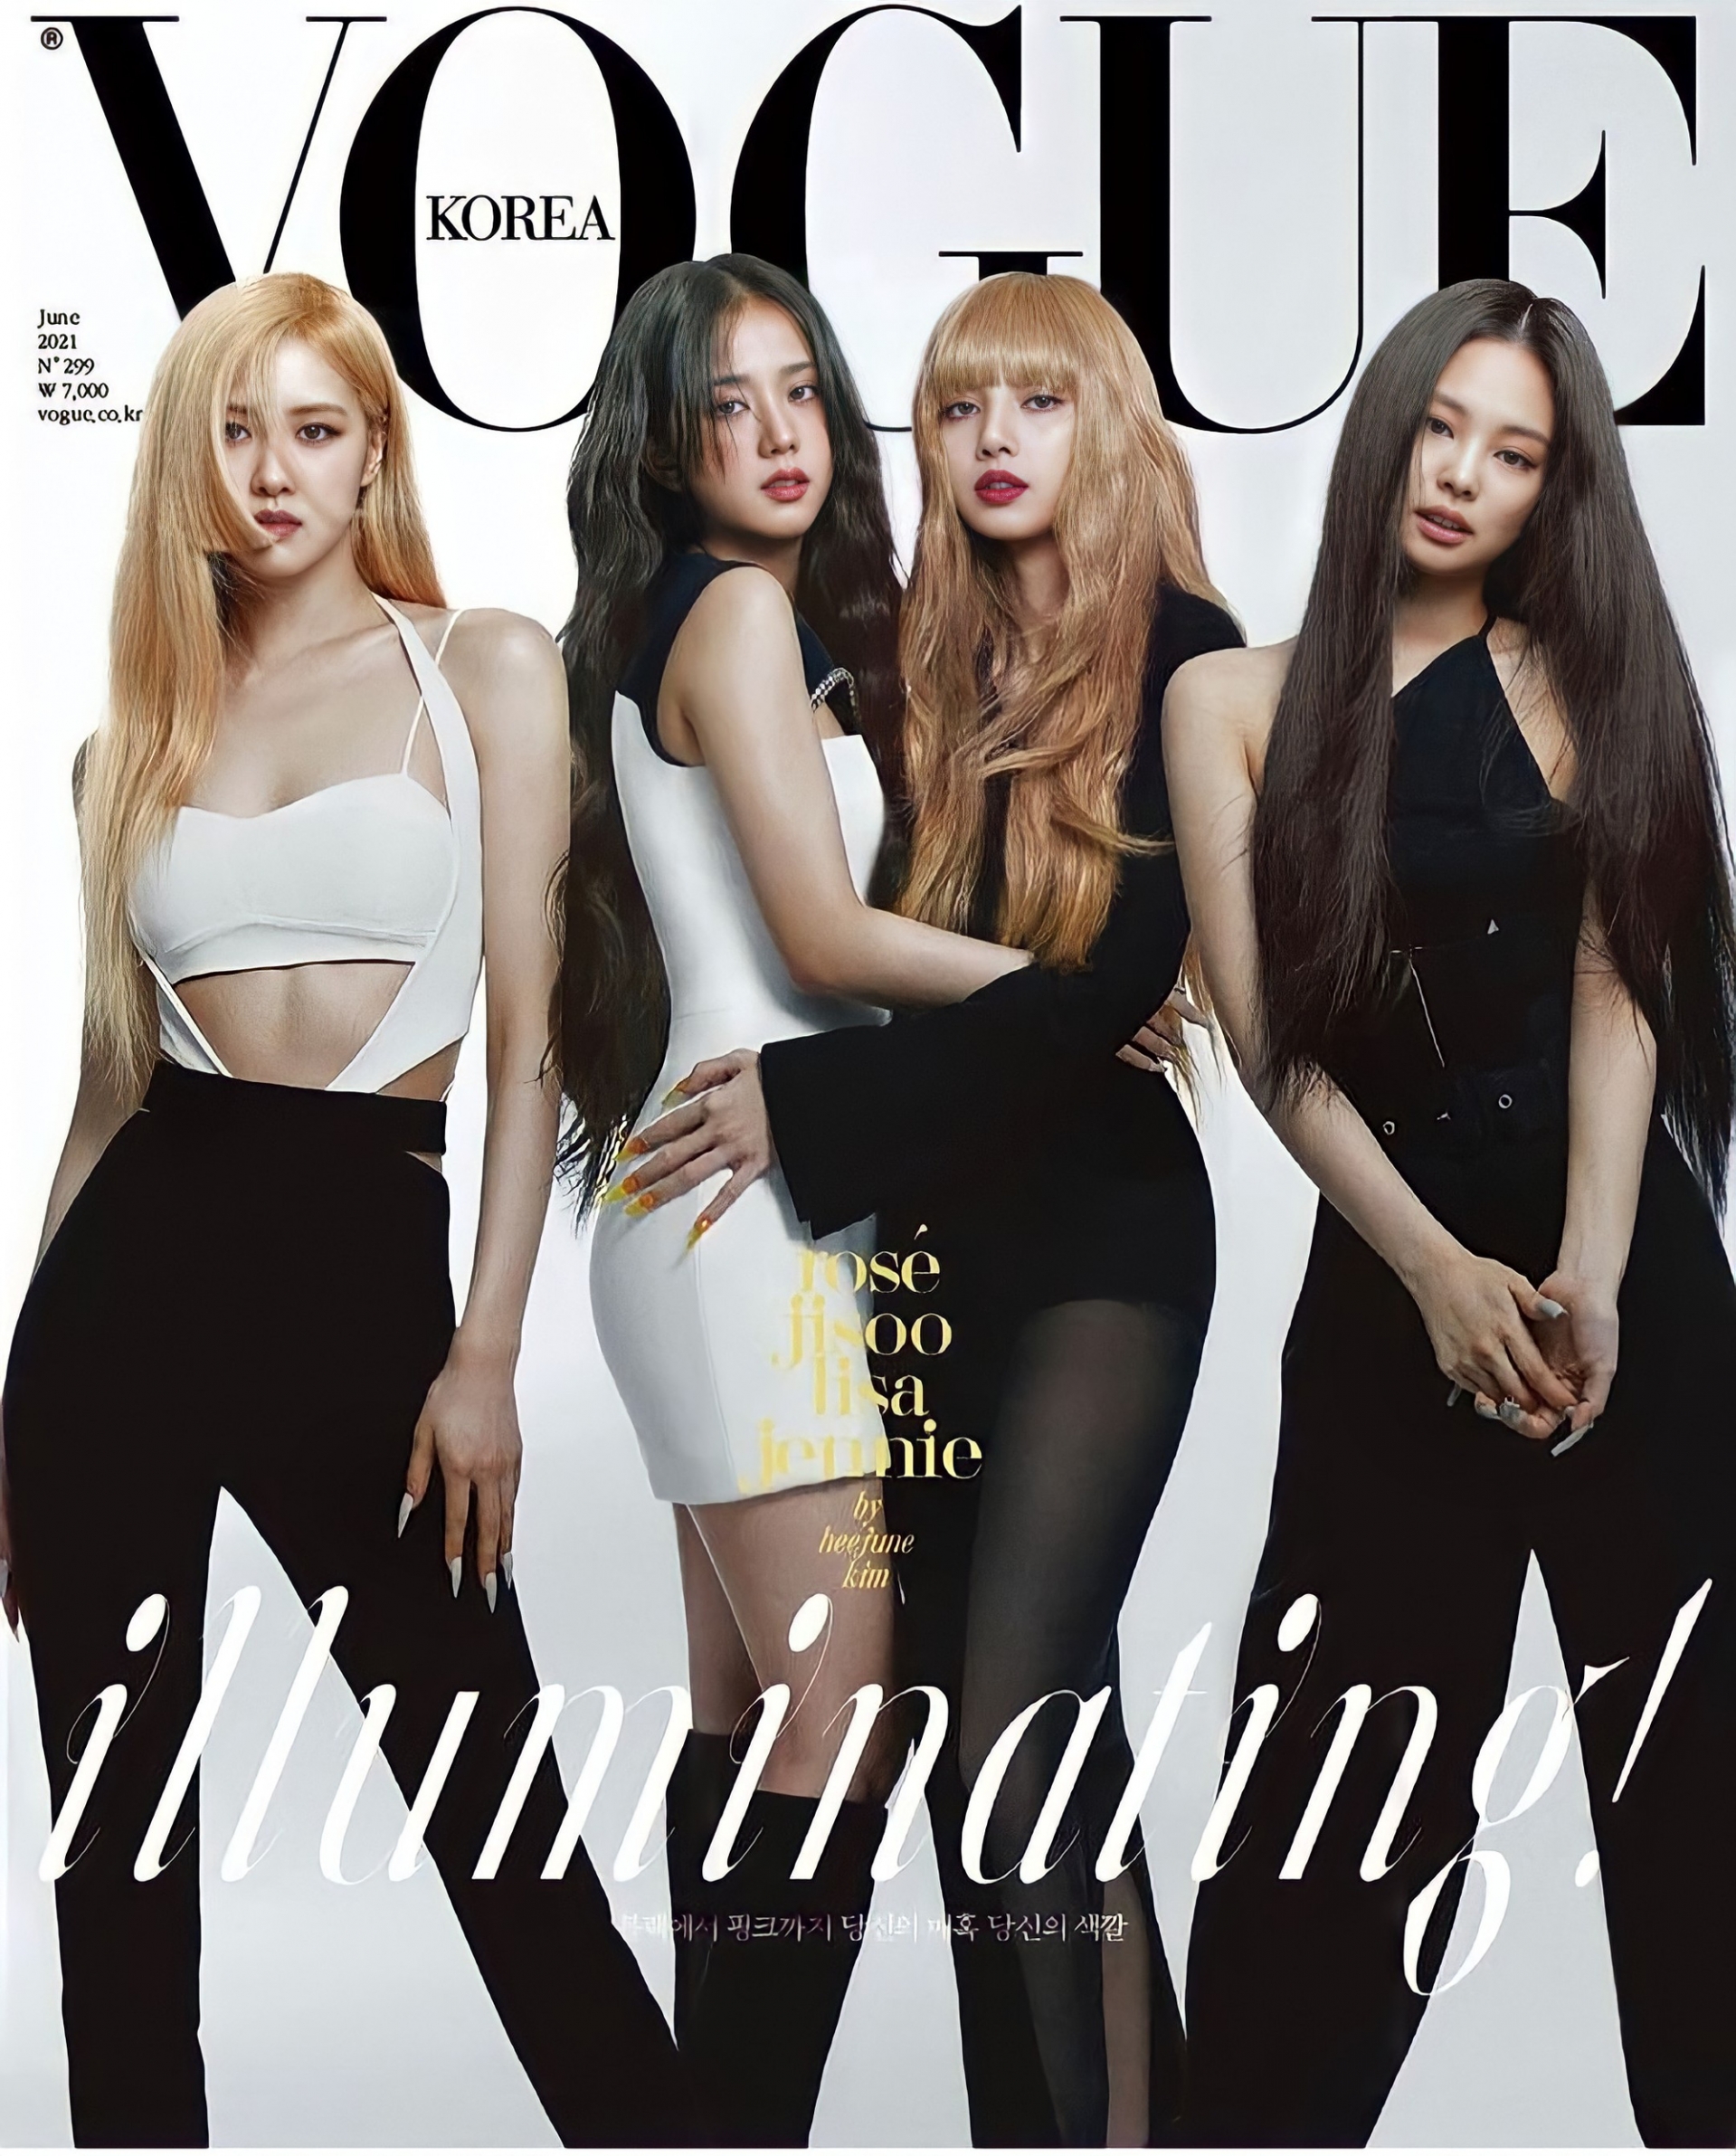 Xuát hiện cùng các chị em của Blackpink trên Vogue Hàn Quốc, Lisa gây ấn tượng với mái tóc vàng rực rỡ.